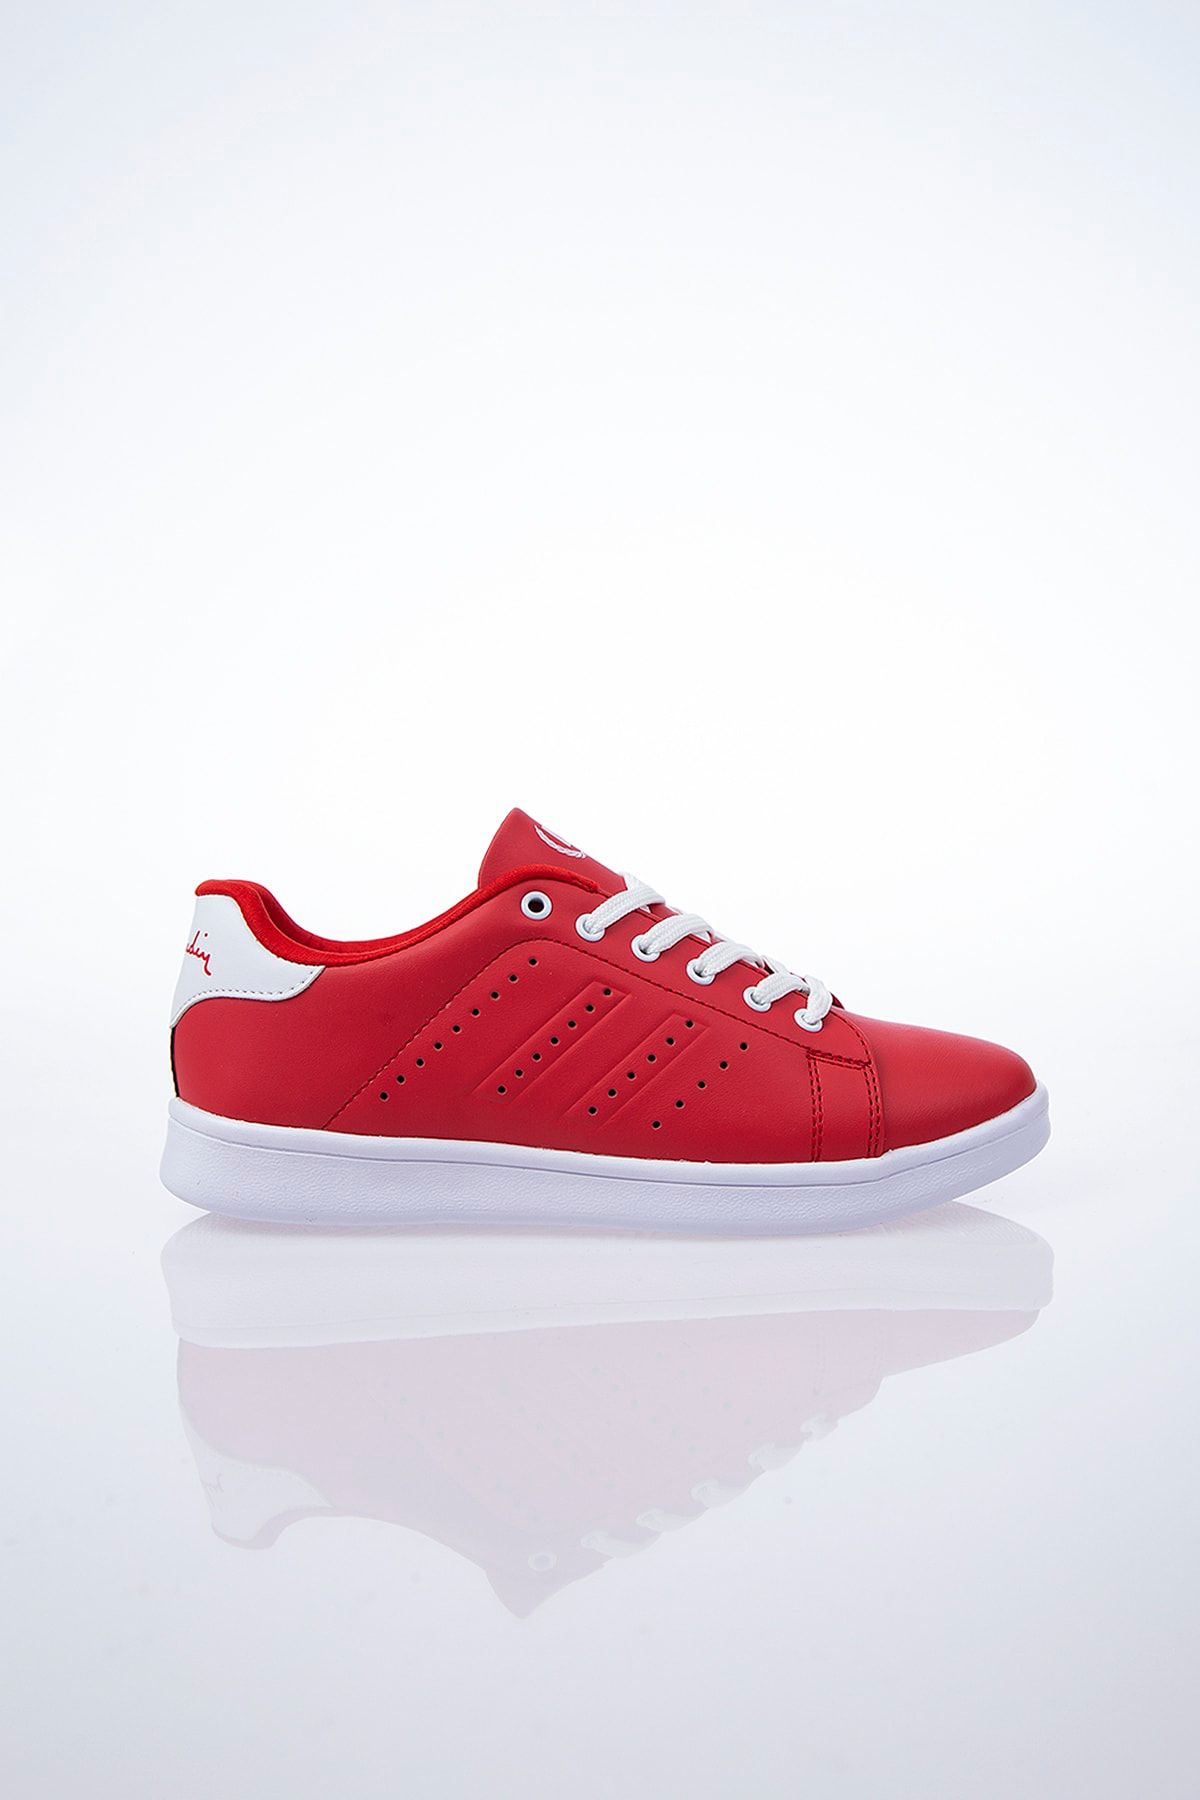 Pierre Cardin Kadın Günlük Spor Ayakkabı-Kırmızı PCS-10144